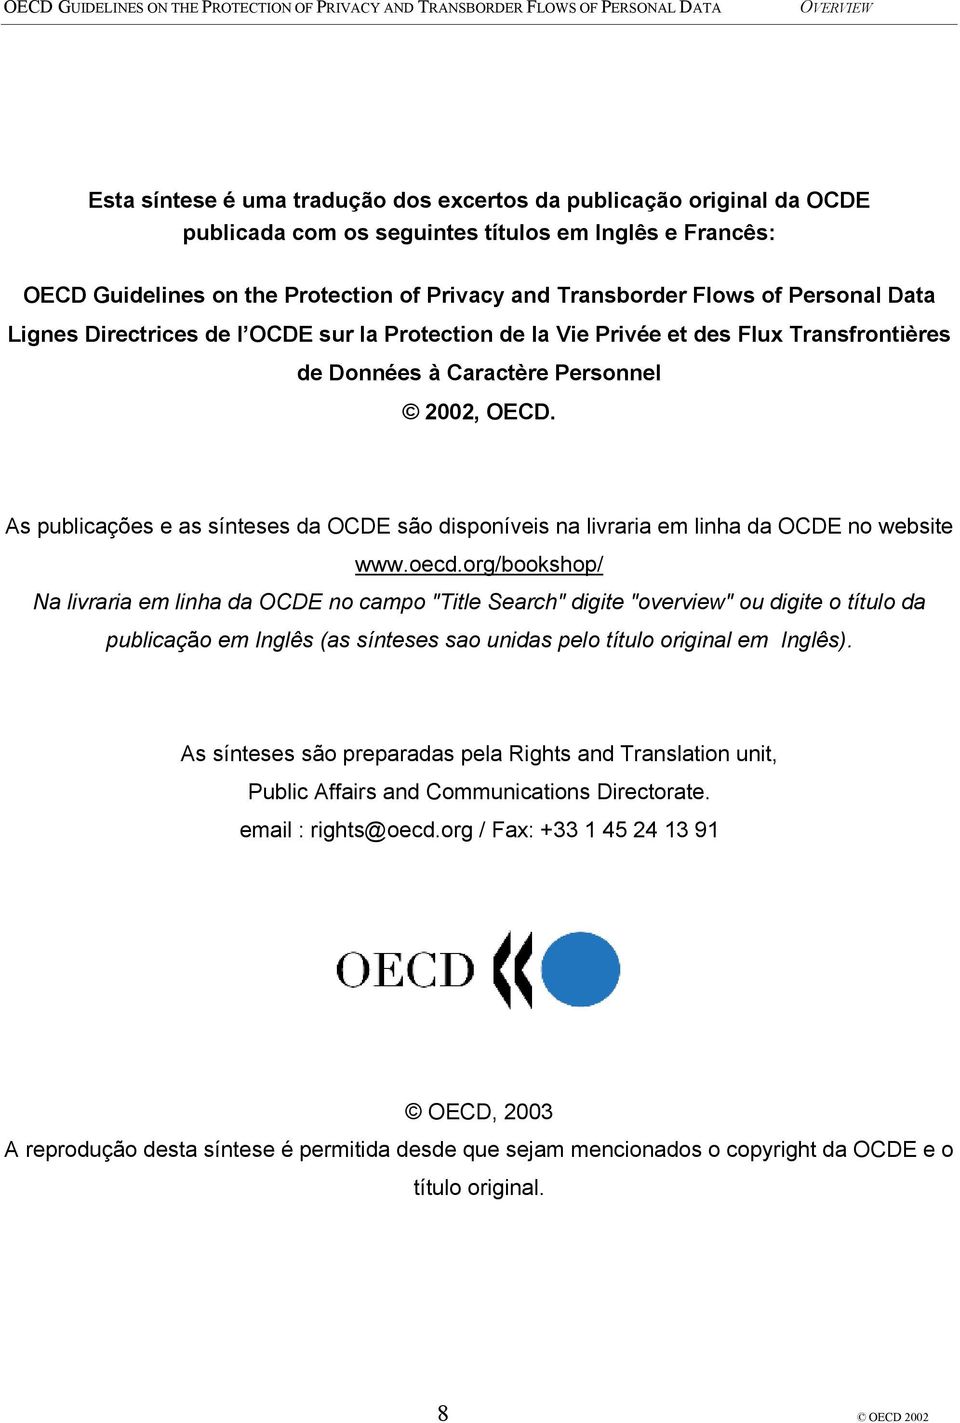 As publicações e as sínteses da OCDE são disponíveis na livraria em linha da OCDE no website www.oecd.